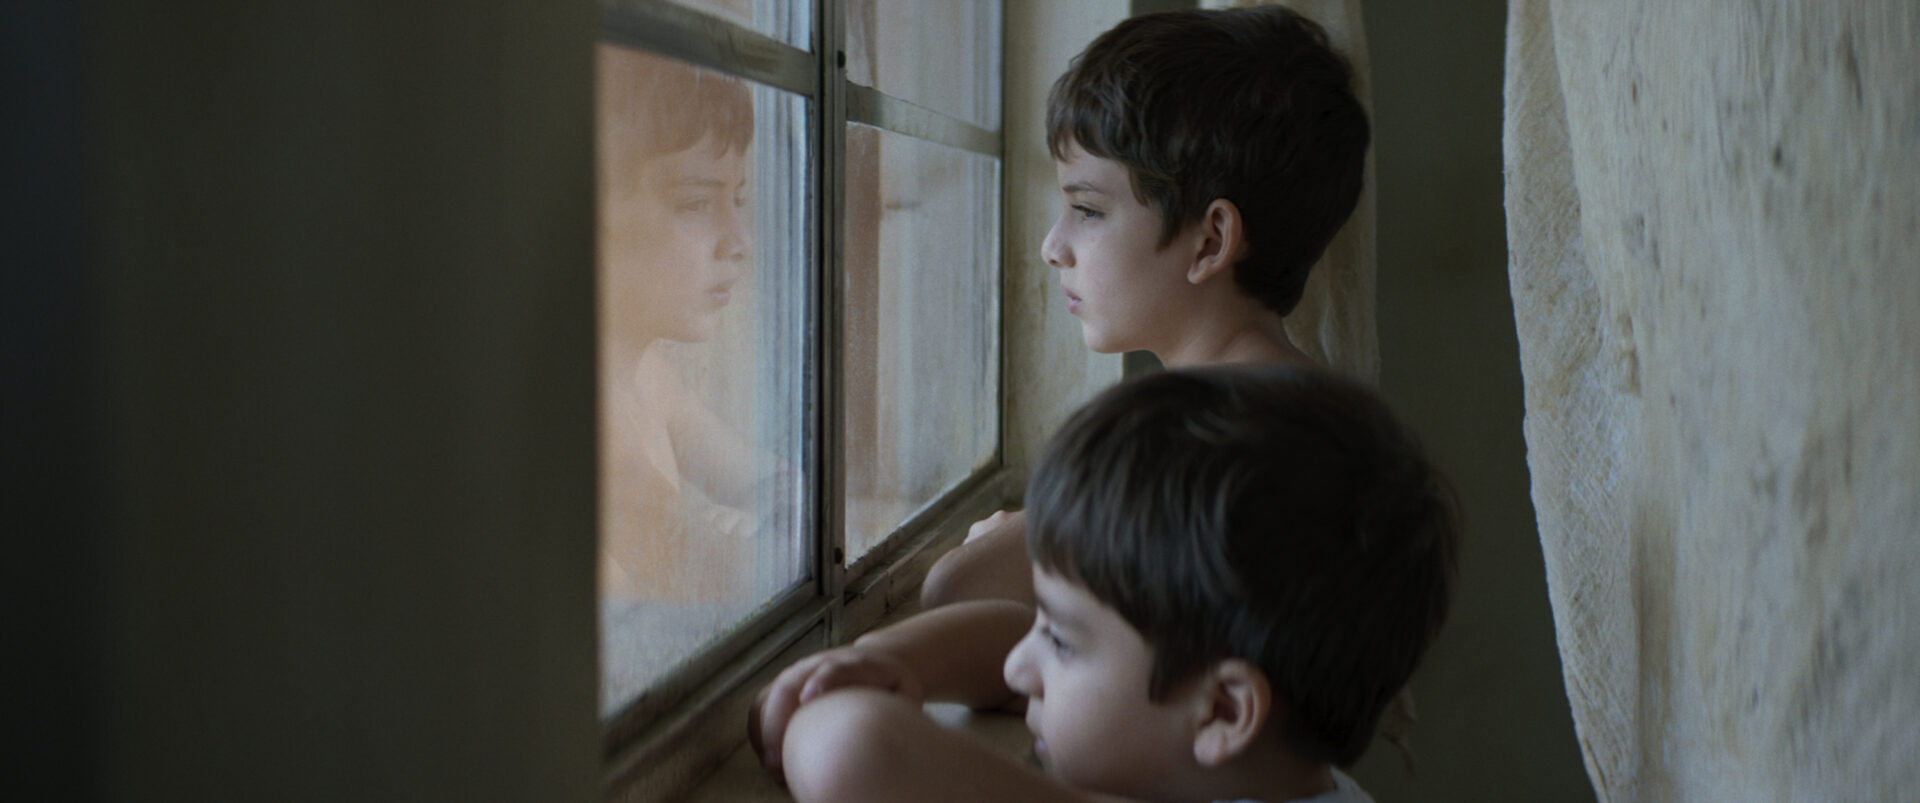 Leo (Leonardo Nájar Márquez) und Max (Maximiliano Nájar Márquez, re.) kennen ihre neue Heimat nur durch die Fensterscheibe